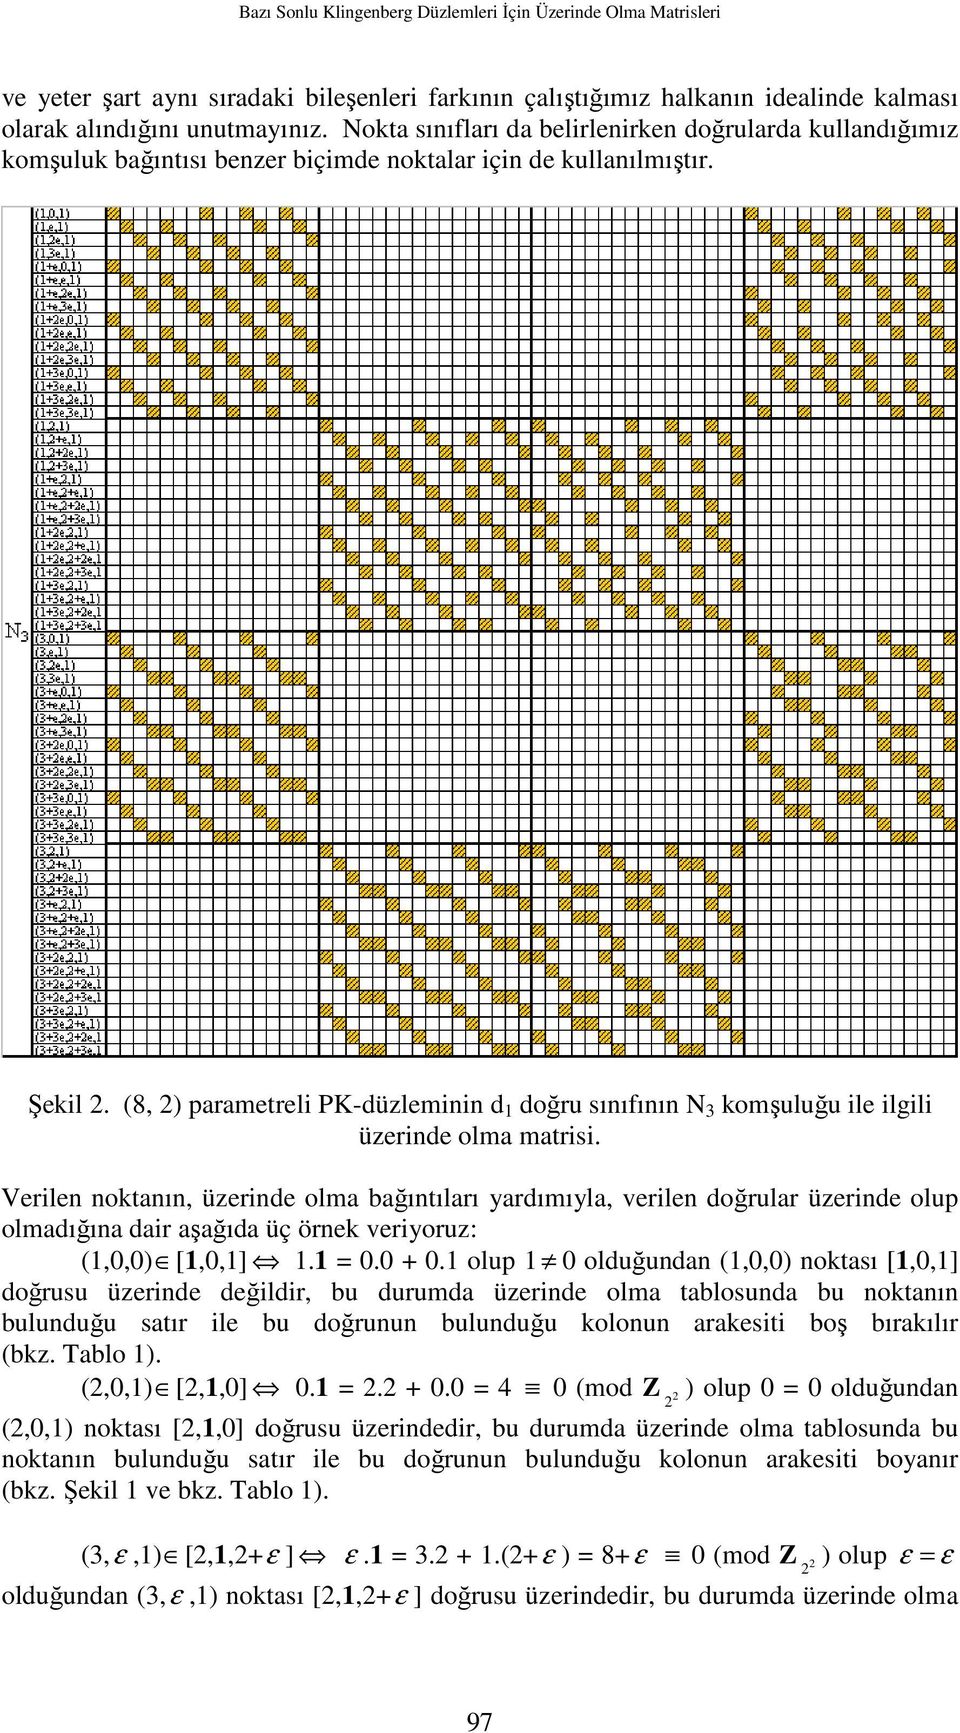 (8, 2) parametreli PK-düzleminin d 1 doğru sınıfının N 3 komşuluğu ile ilgili üzerinde olma matrisi.